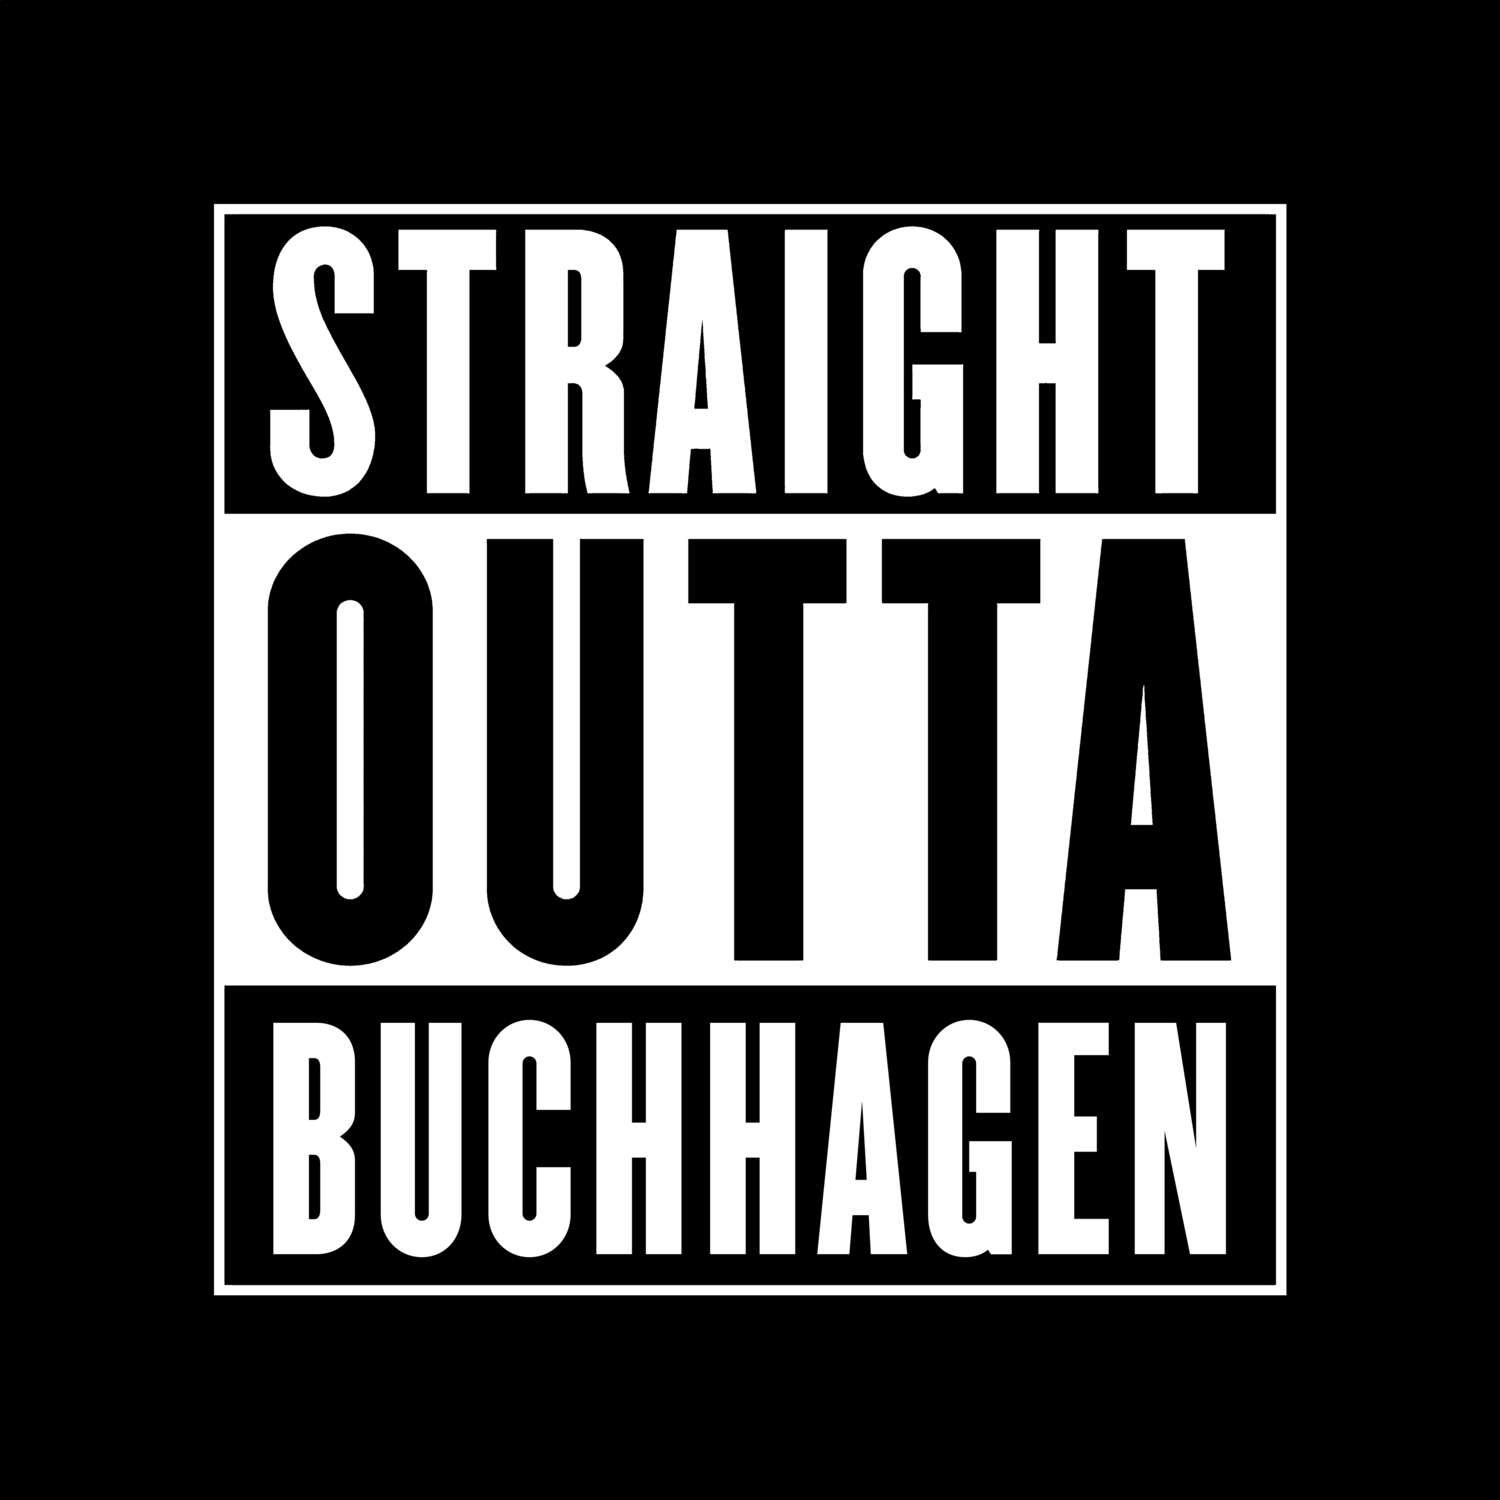 Buchhagen T-Shirt »Straight Outta«